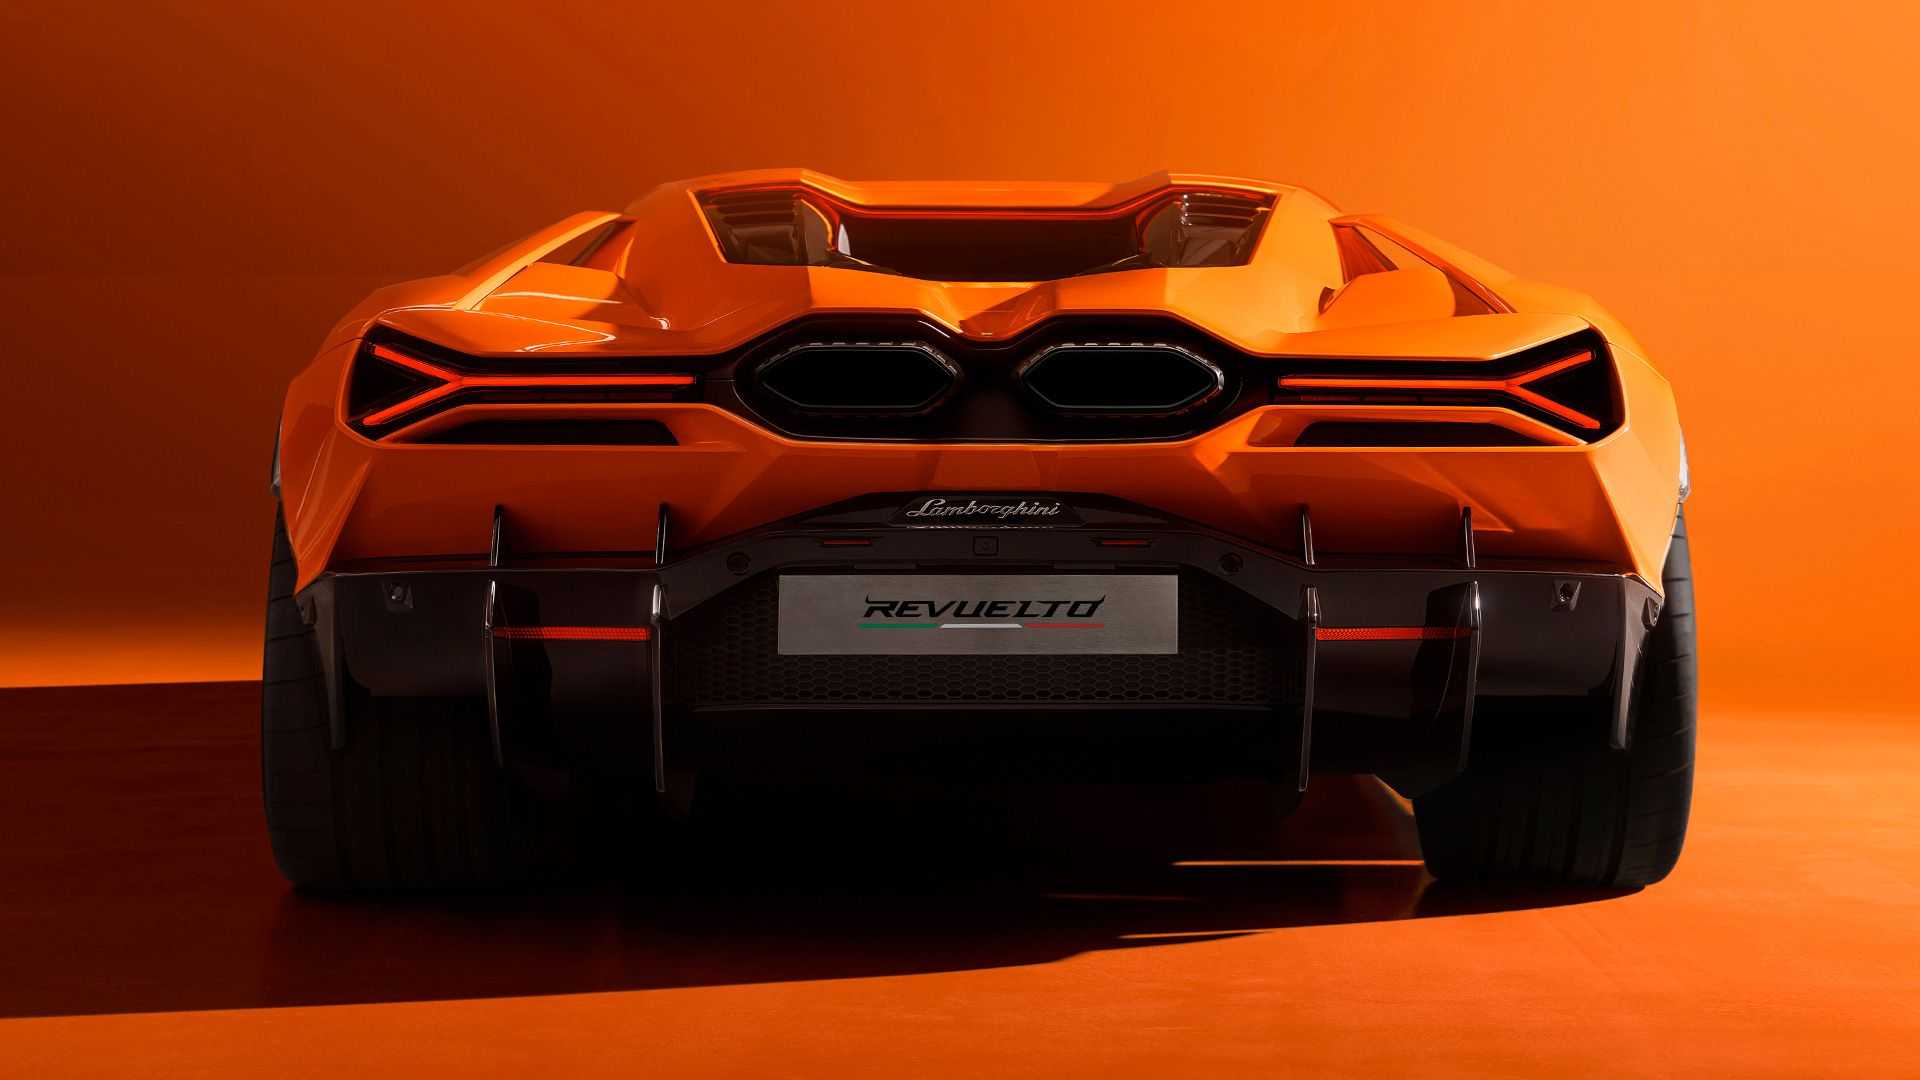 Ra mắt Lamborghini Revuelto thế chỗ Aventador: Siêu xe mạnh nhất lịch sử hãng nhưng đi phố chỉ ngang cơ Civic - ảnh 9